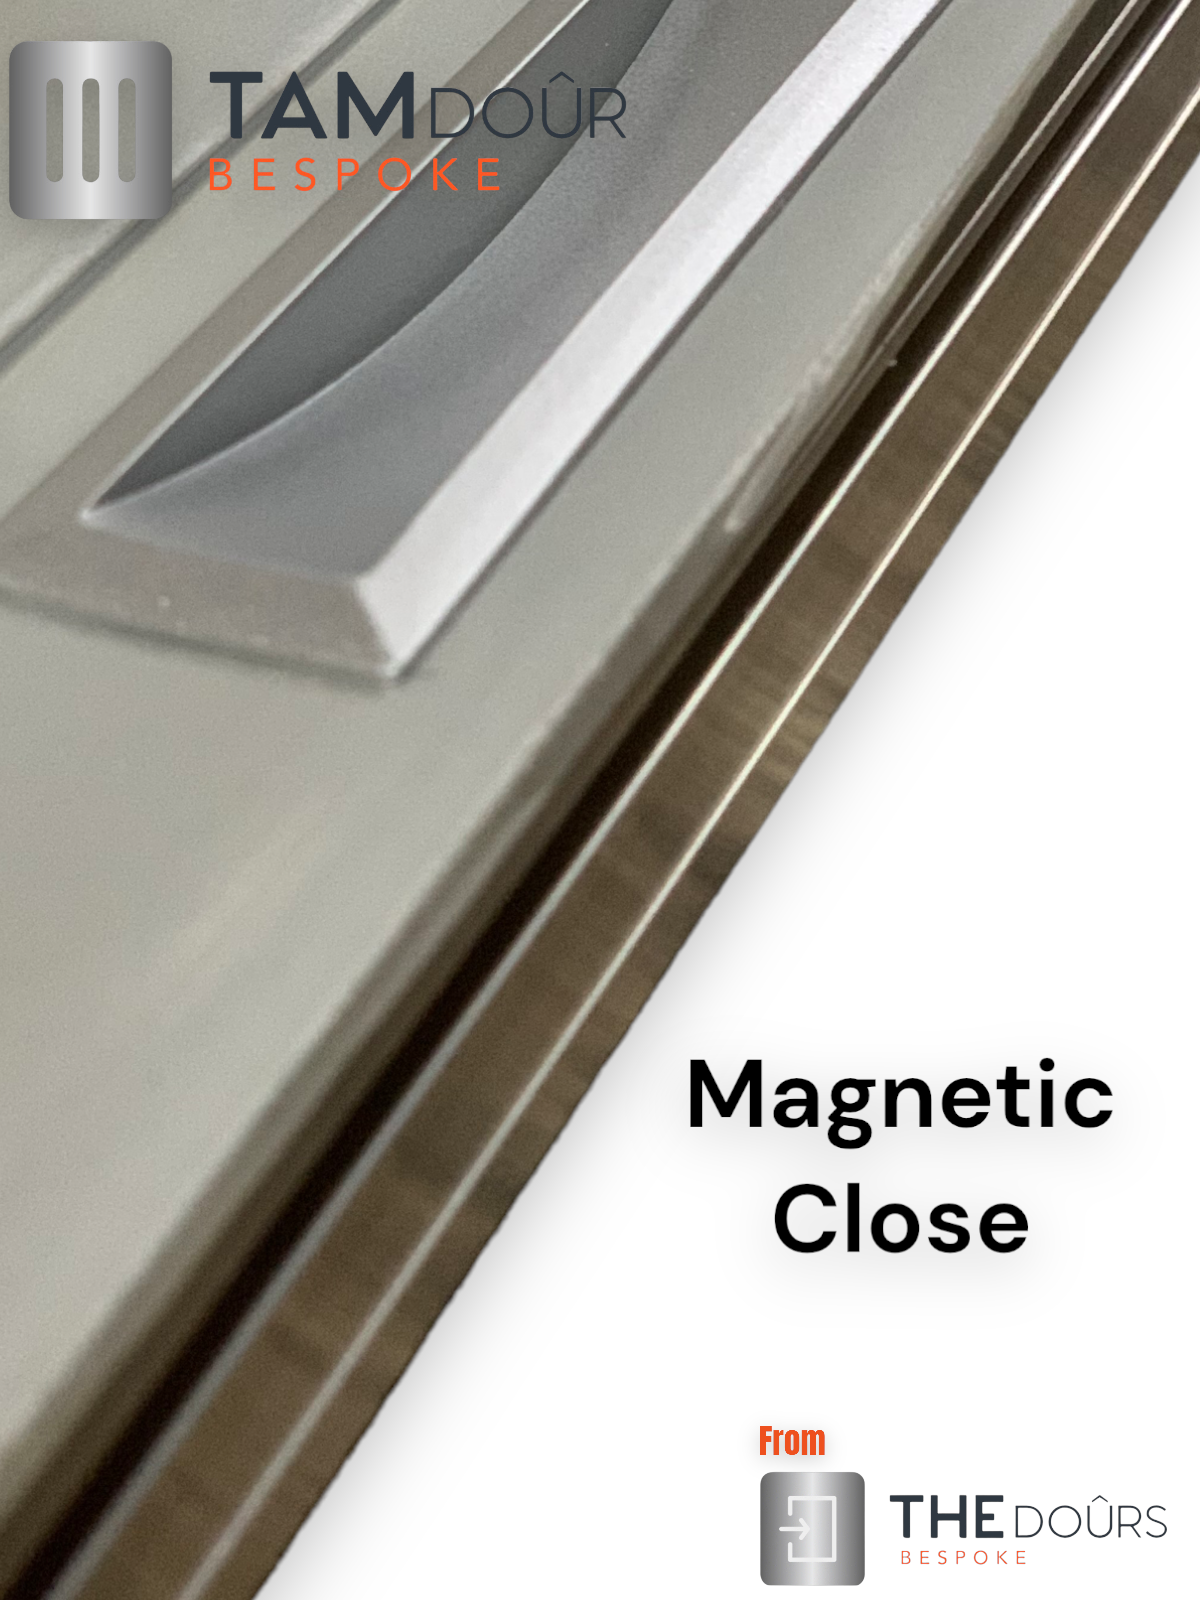 Kit Tambour Silver Door - Options de poignée blanche de 1500 mm à 2000 mm de hauteur